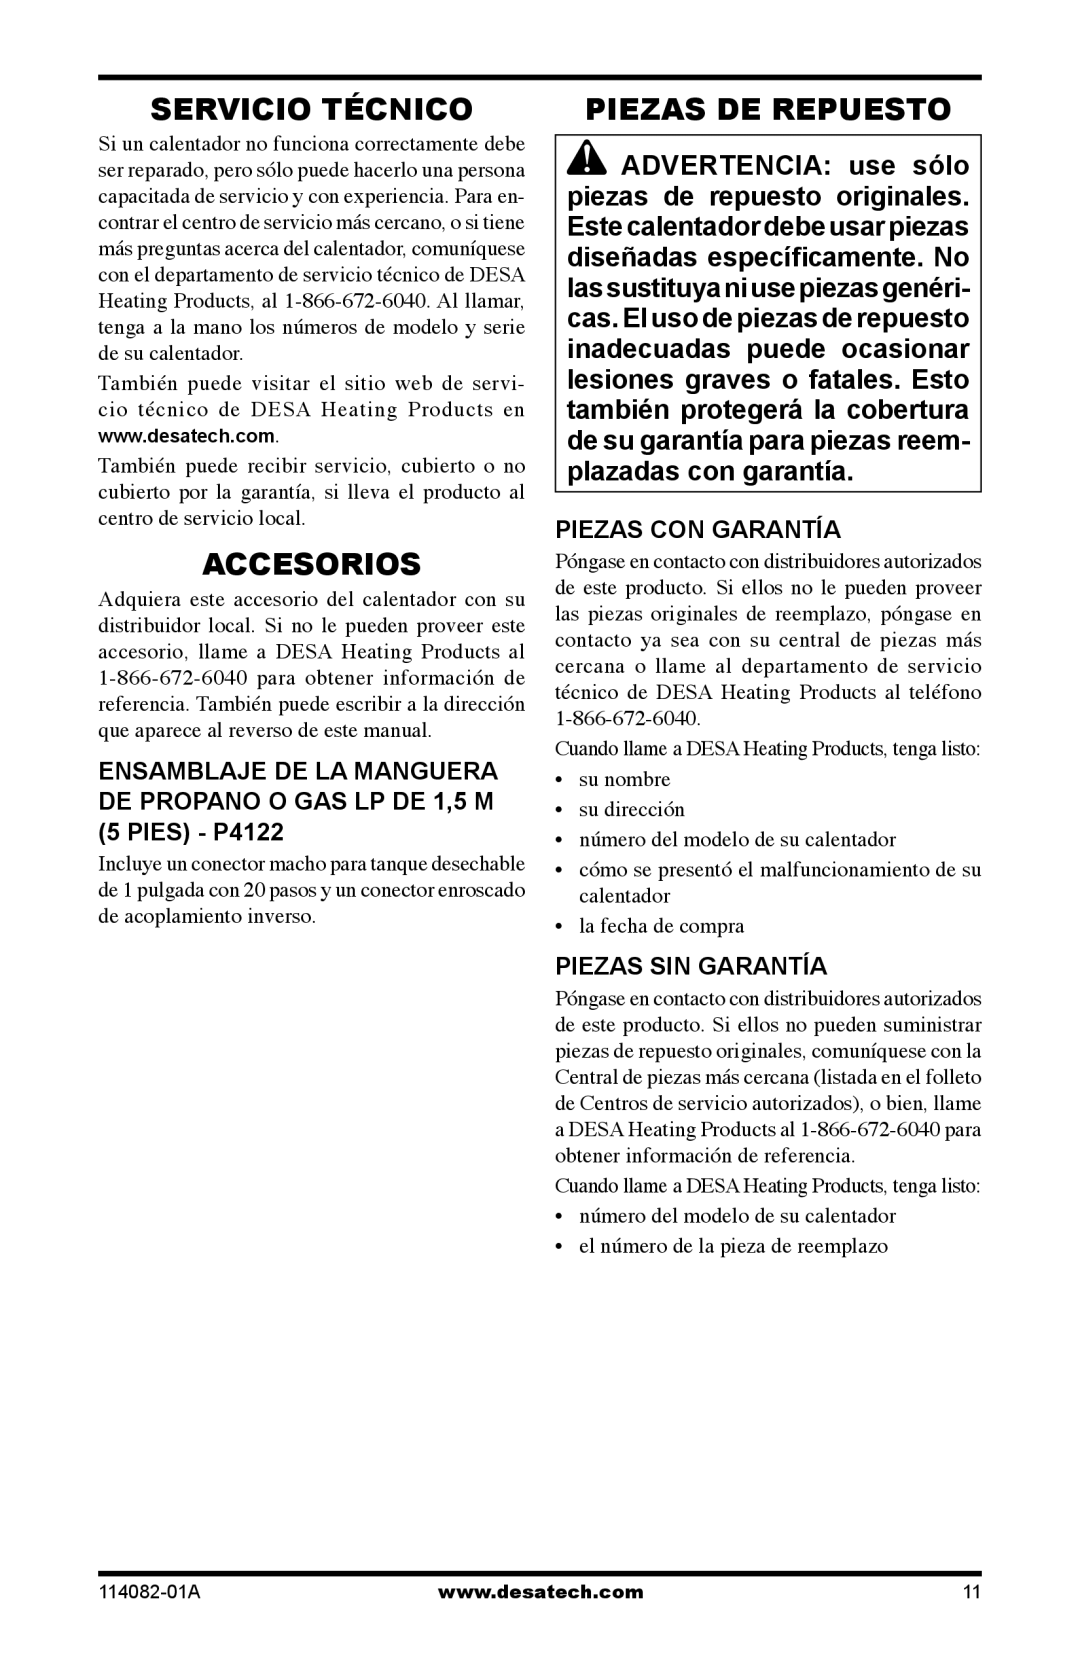 Desa SPC-21PHTSA owner manual Servicio Técnico, Accesorios, Piezas De Repuesto, Piezas Con Garantía, Piezas Sin Garantía 